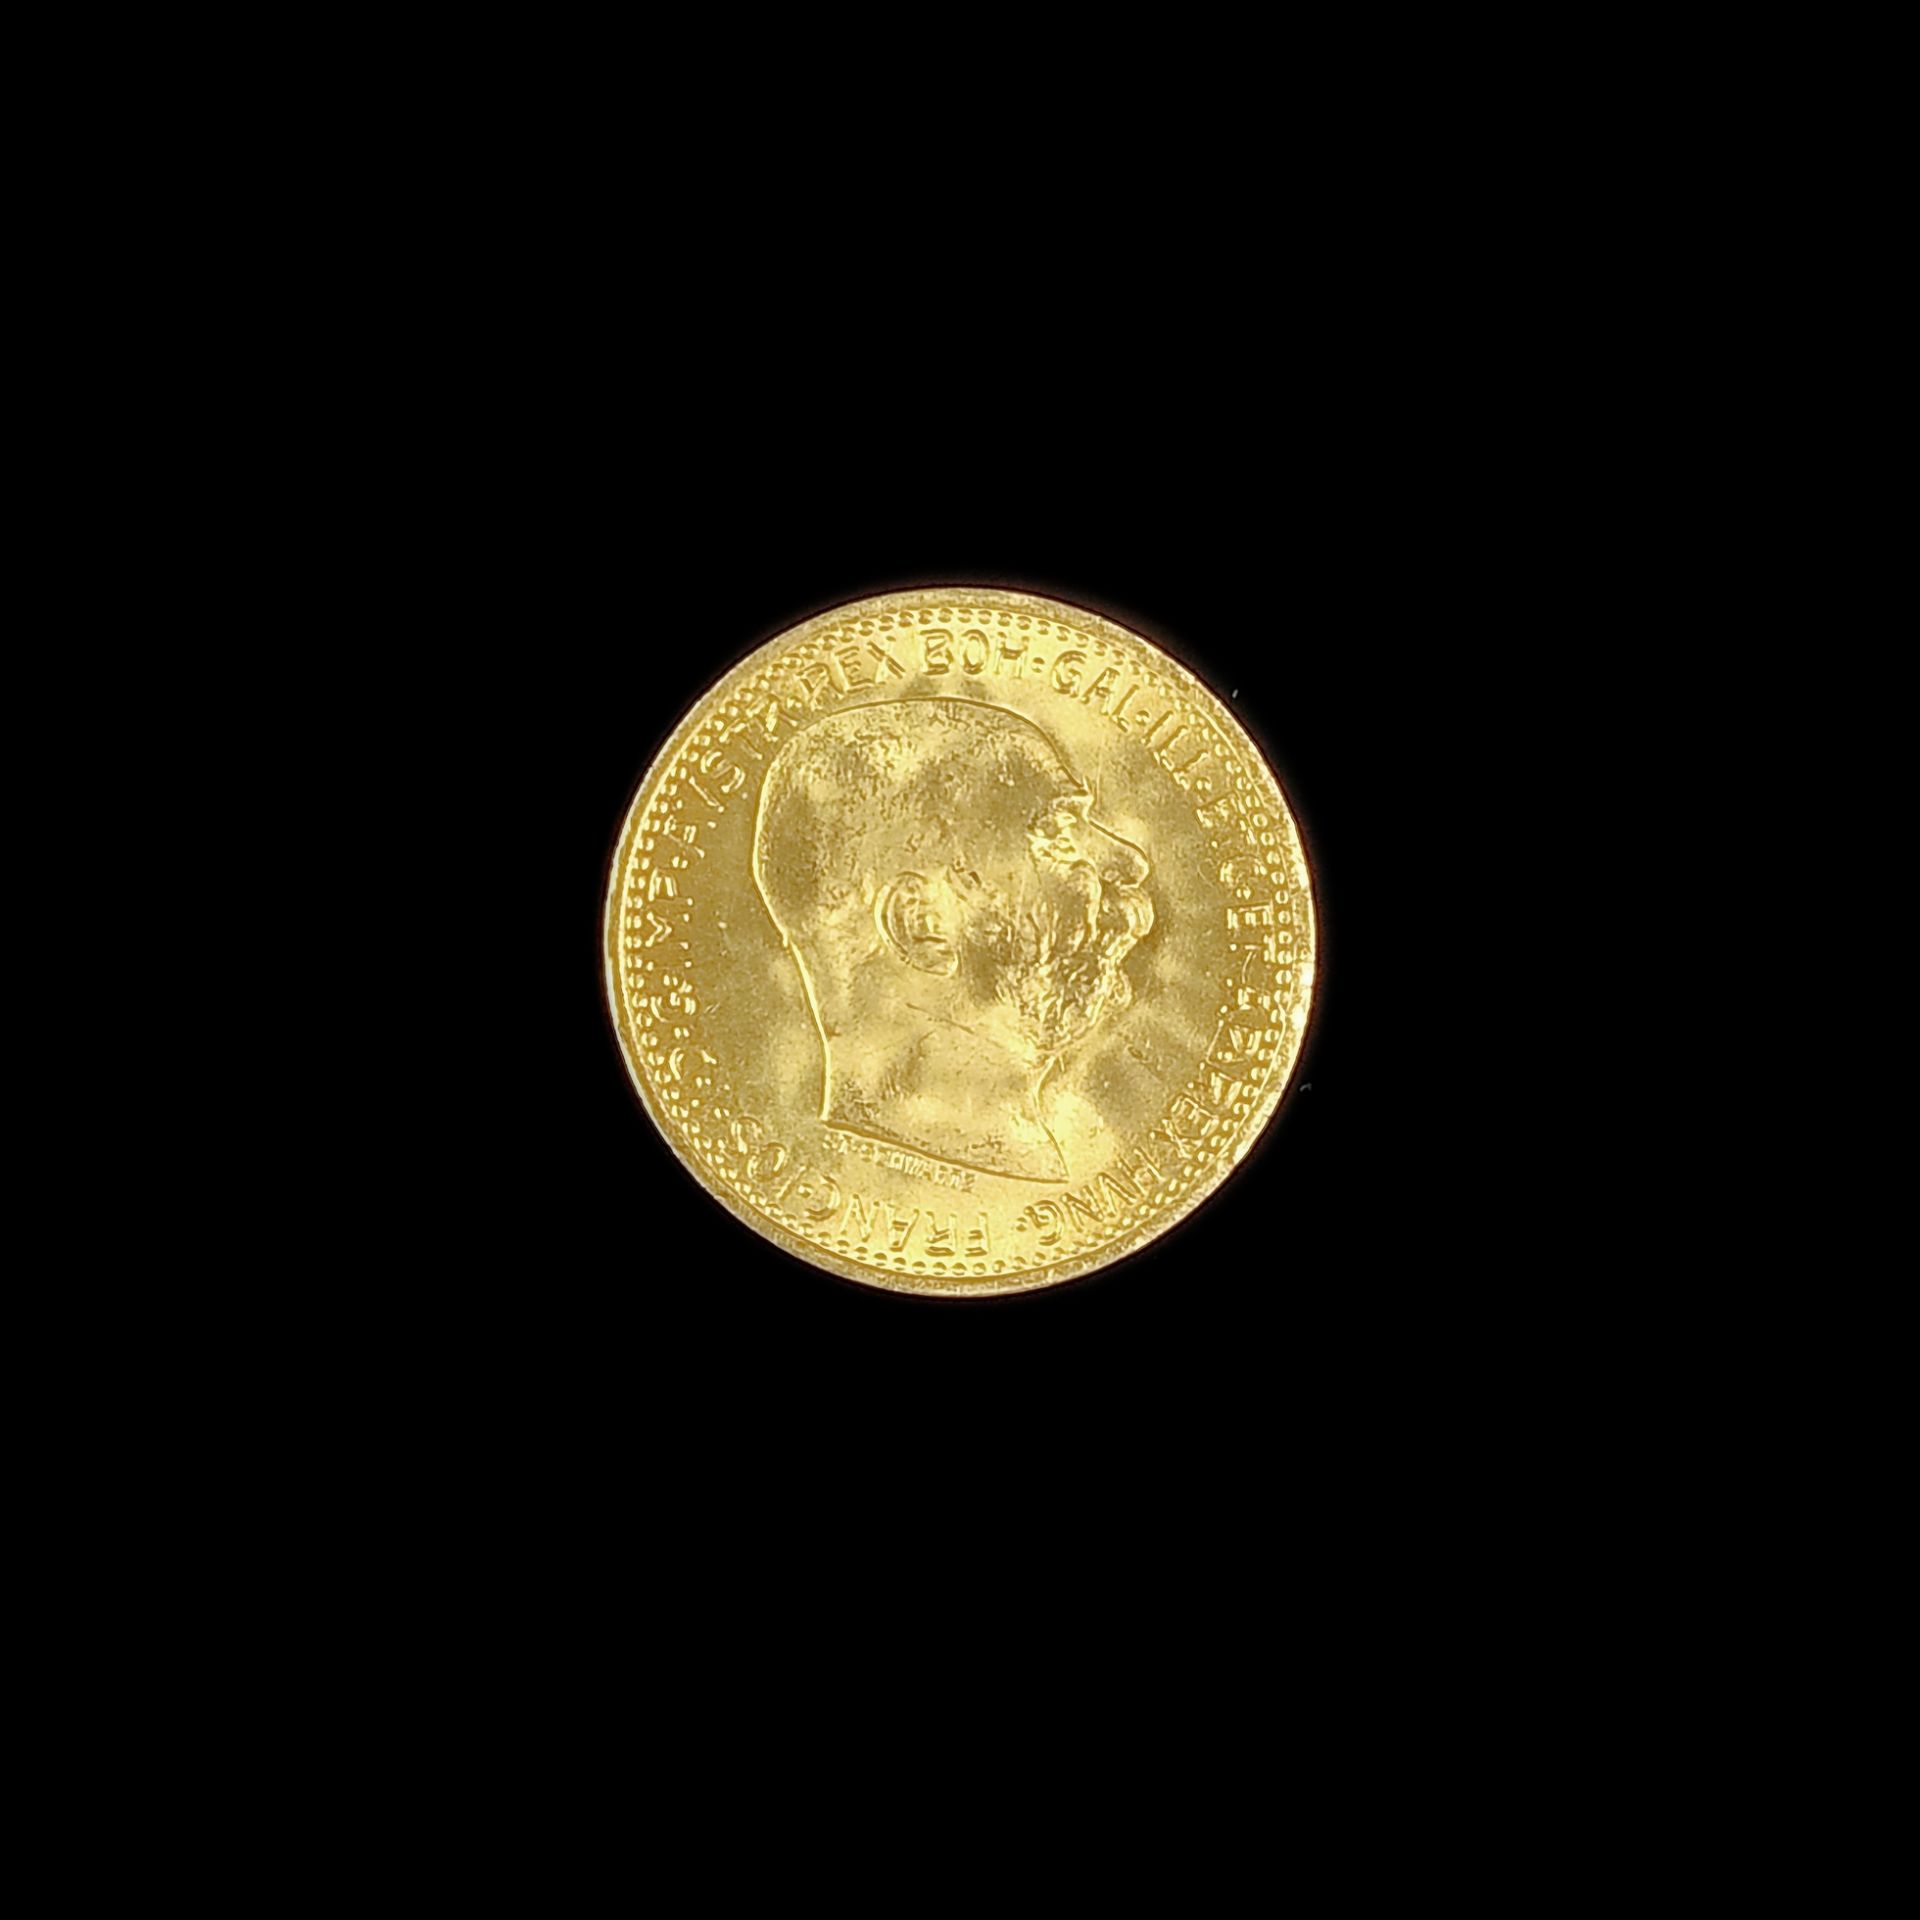 Gold coin, 10 Kronen / crowns, Franz Joseph I, Austria-Hungary 1912, 900 yellow gold, 3.39g, diamet